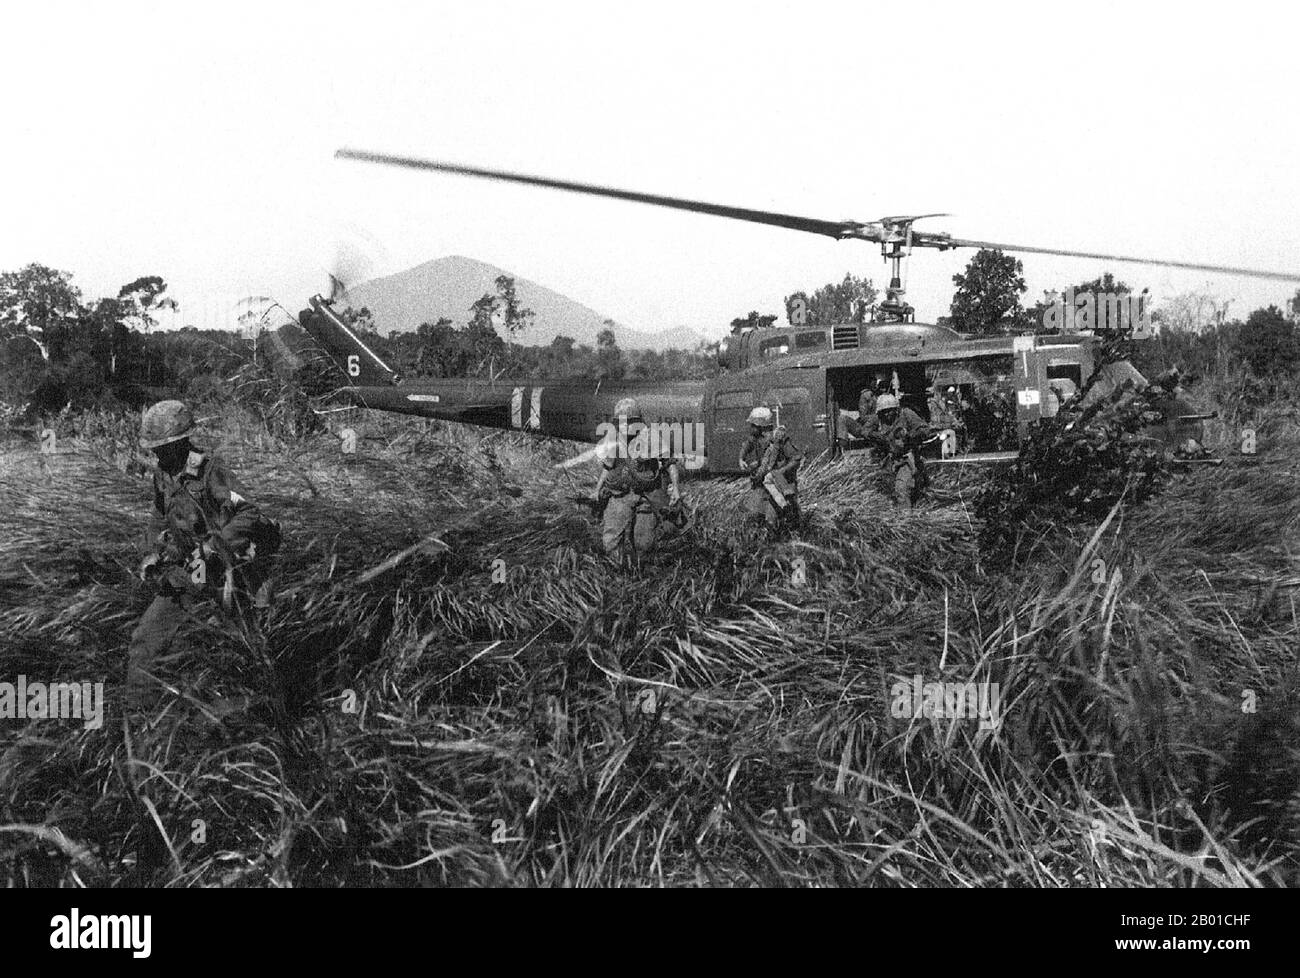 Vietnam: FANTERIA USA che attacca da un elicottero Huey UH-1D durante l'operazione Attleboro, Central Highlands, 1966. La seconda guerra indochina, conosciuta in America come la guerra del Vietnam, fu un conflitto militare dell'epoca della guerra fredda che si verificò in Vietnam, Laos e Cambogia dal 1 novembre 1955 alla caduta di Saigon il 30 aprile 1975. Questa guerra seguì la prima Guerra d'Indocina e fu combattuta tra il Vietnam del Nord, sostenuto dai suoi alleati comunisti, e il governo del Vietnam del Sud, sostenuto dagli Stati Uniti e da altre nazioni anticomuniste. Foto Stock